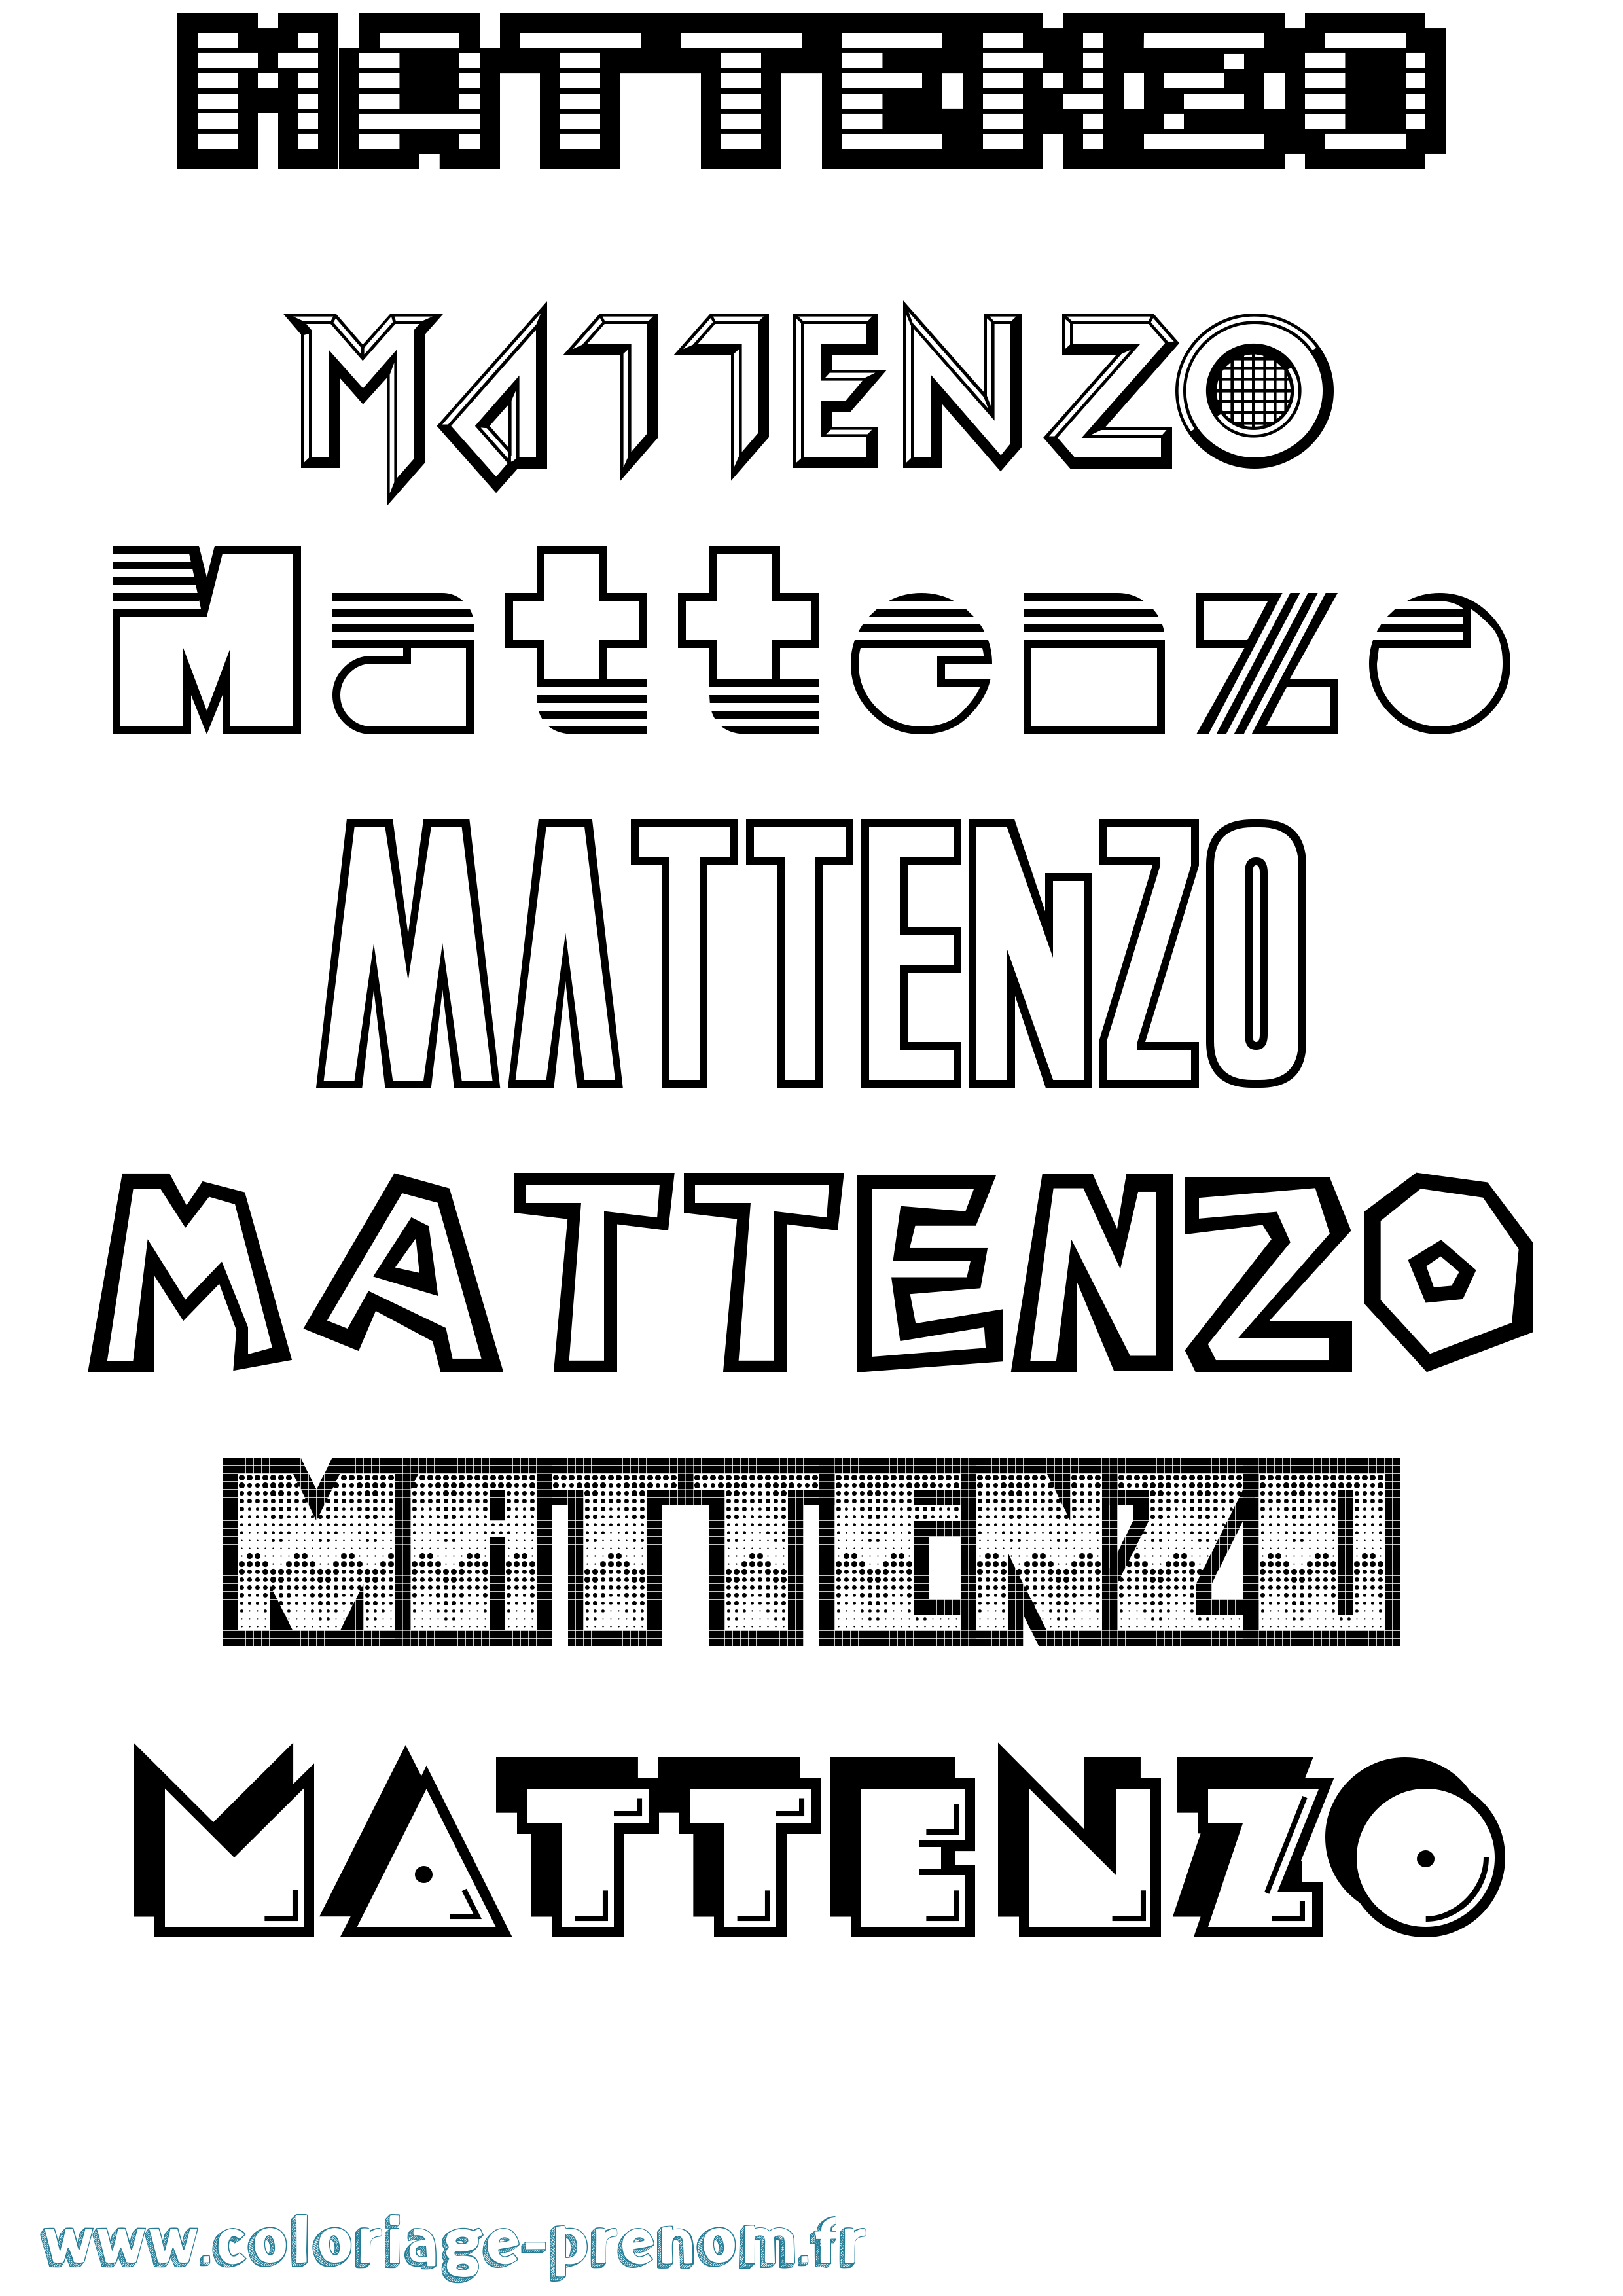 Coloriage prénom Mattenzo Jeux Vidéos